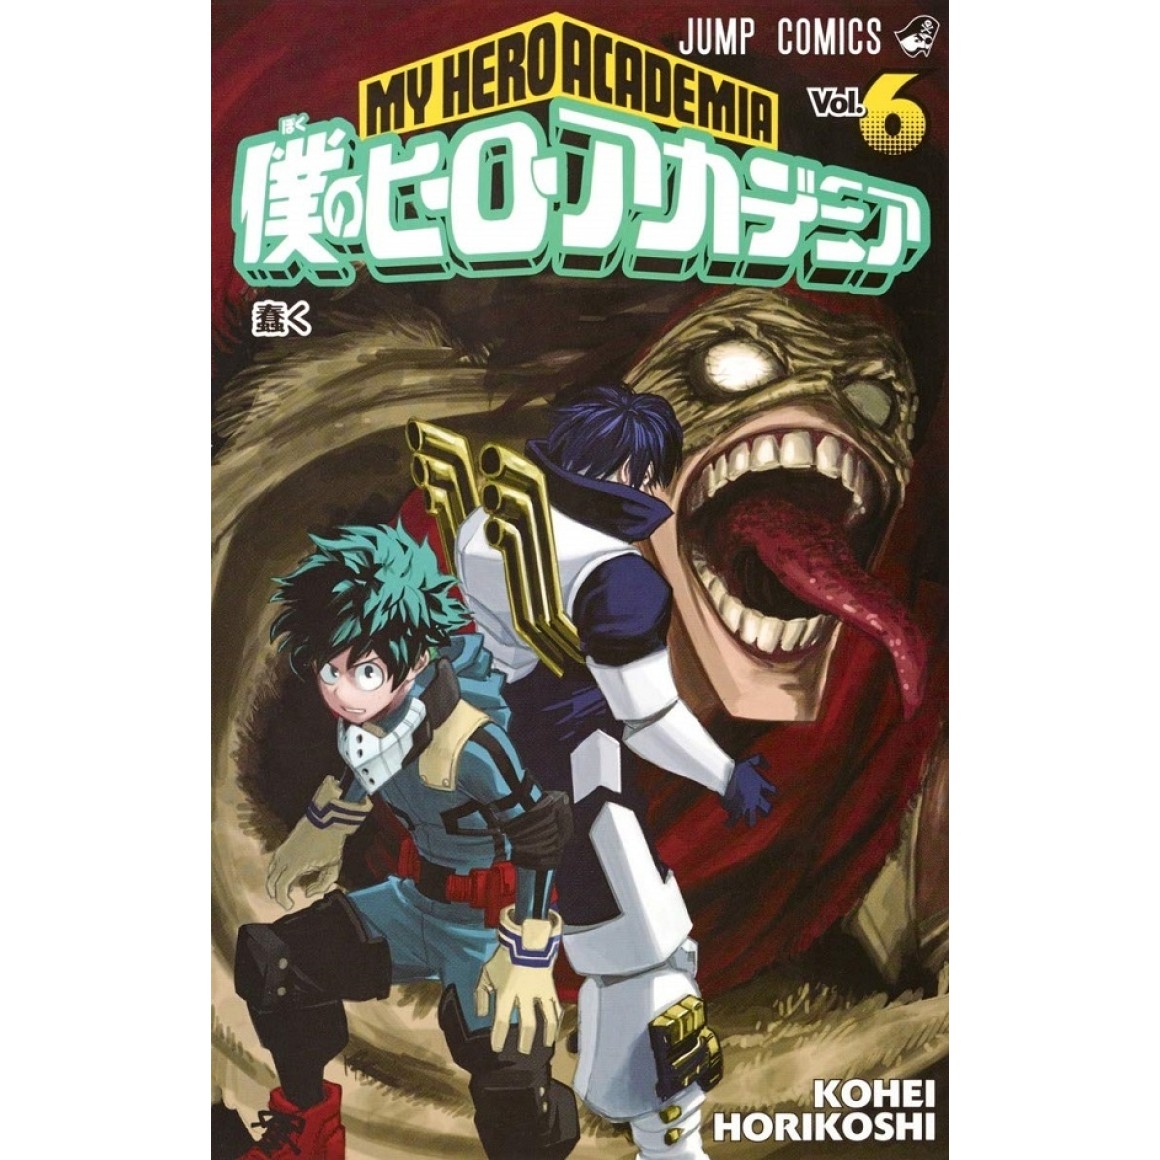 My Hero Academia, Vol. 1 (1) by Kohei Horikoshi